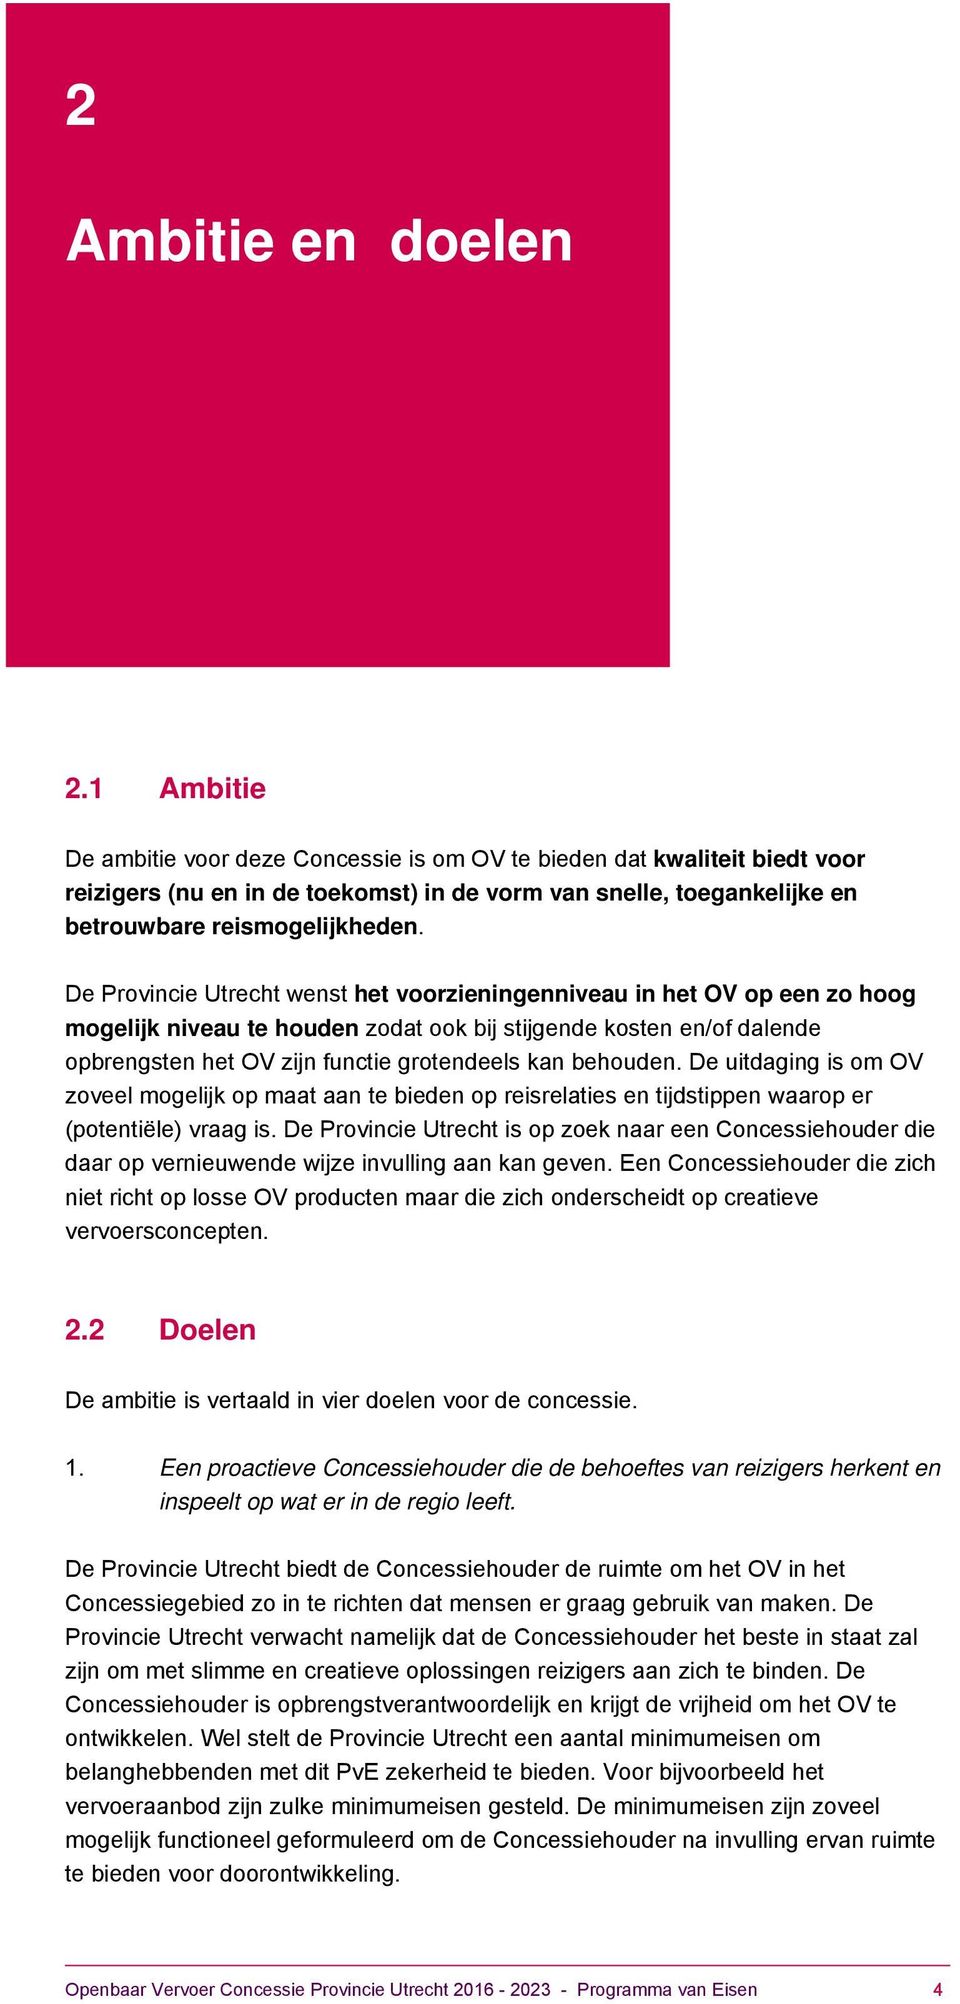 De Provincie Utrecht wenst het voorzieningenniveau in het OV op een zo hoog mogelijk niveau te houden zodat ook bij stijgende kosten en/of dalende opbrengsten het OV zijn functie grotendeels kan